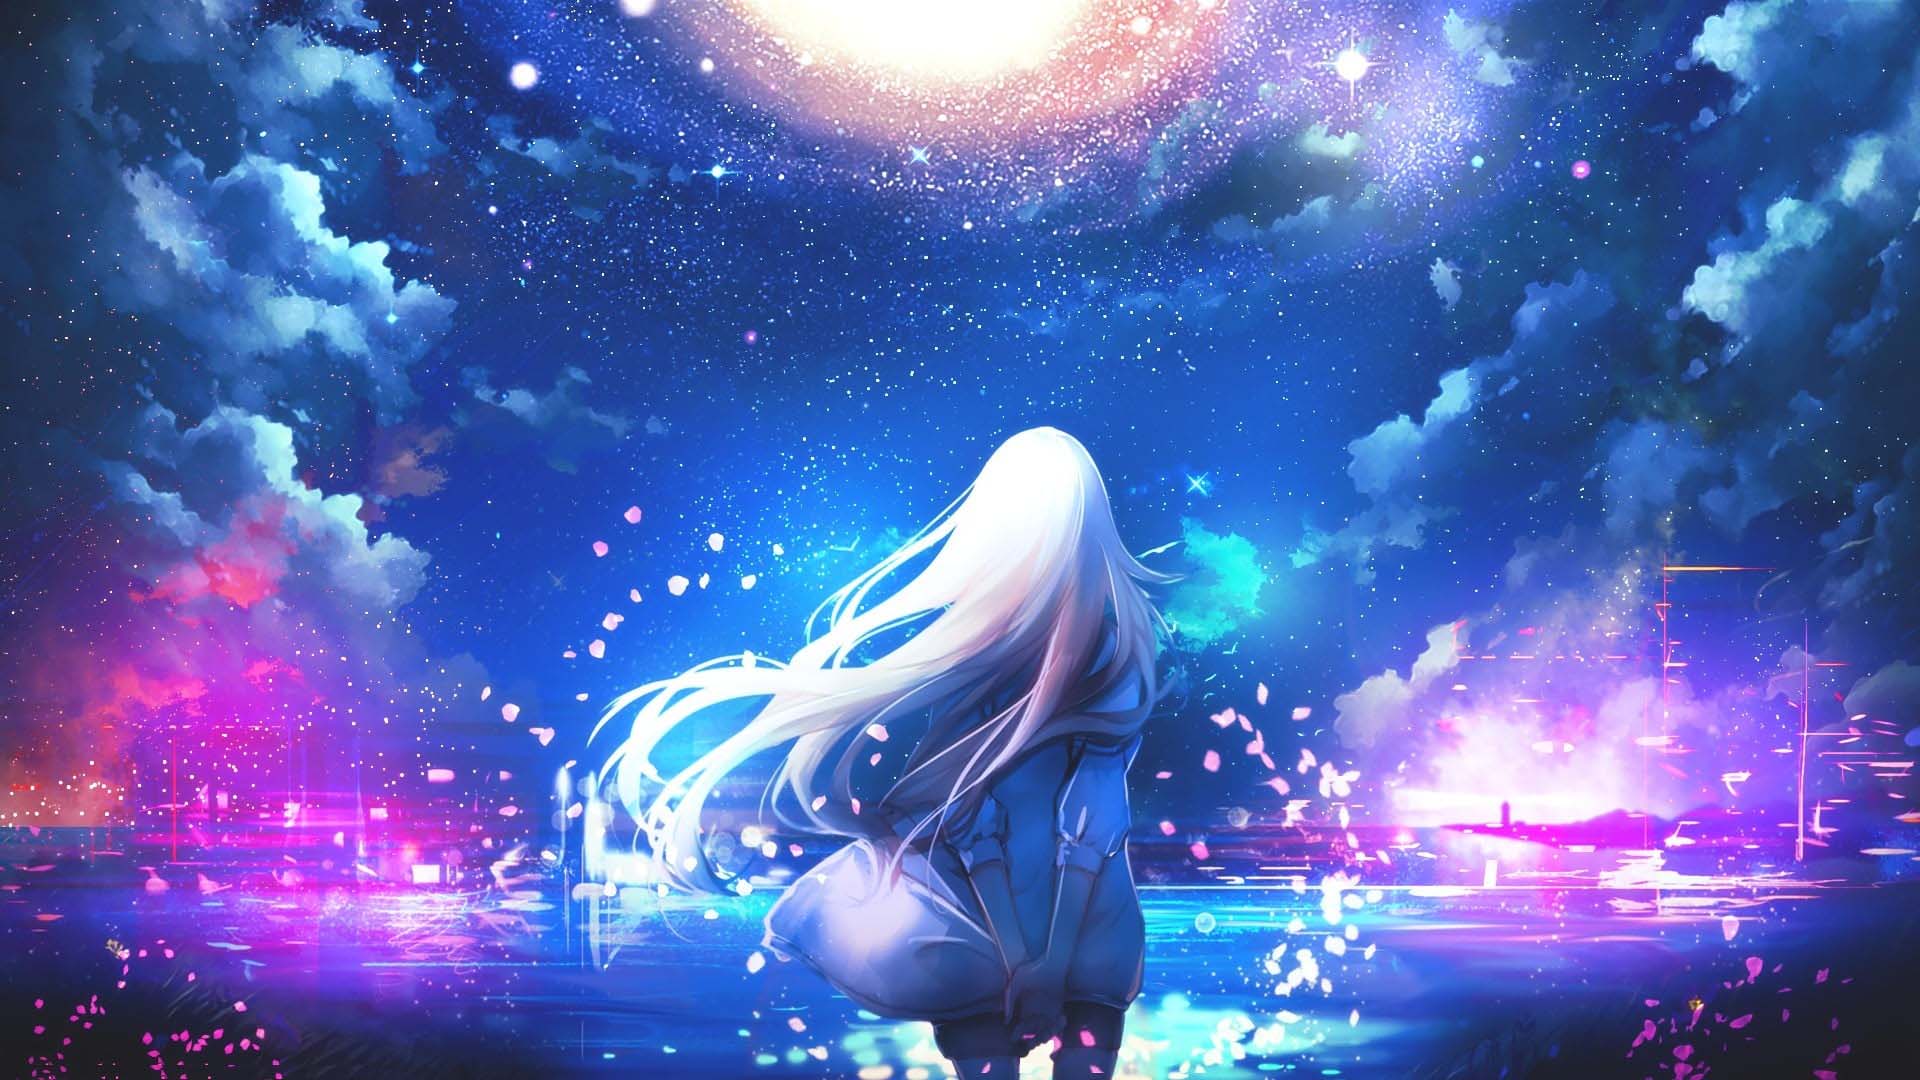 Hình galaxy cô gái anime tóc dài trắng ngắm bầu trời đẹp tuyệt ảo